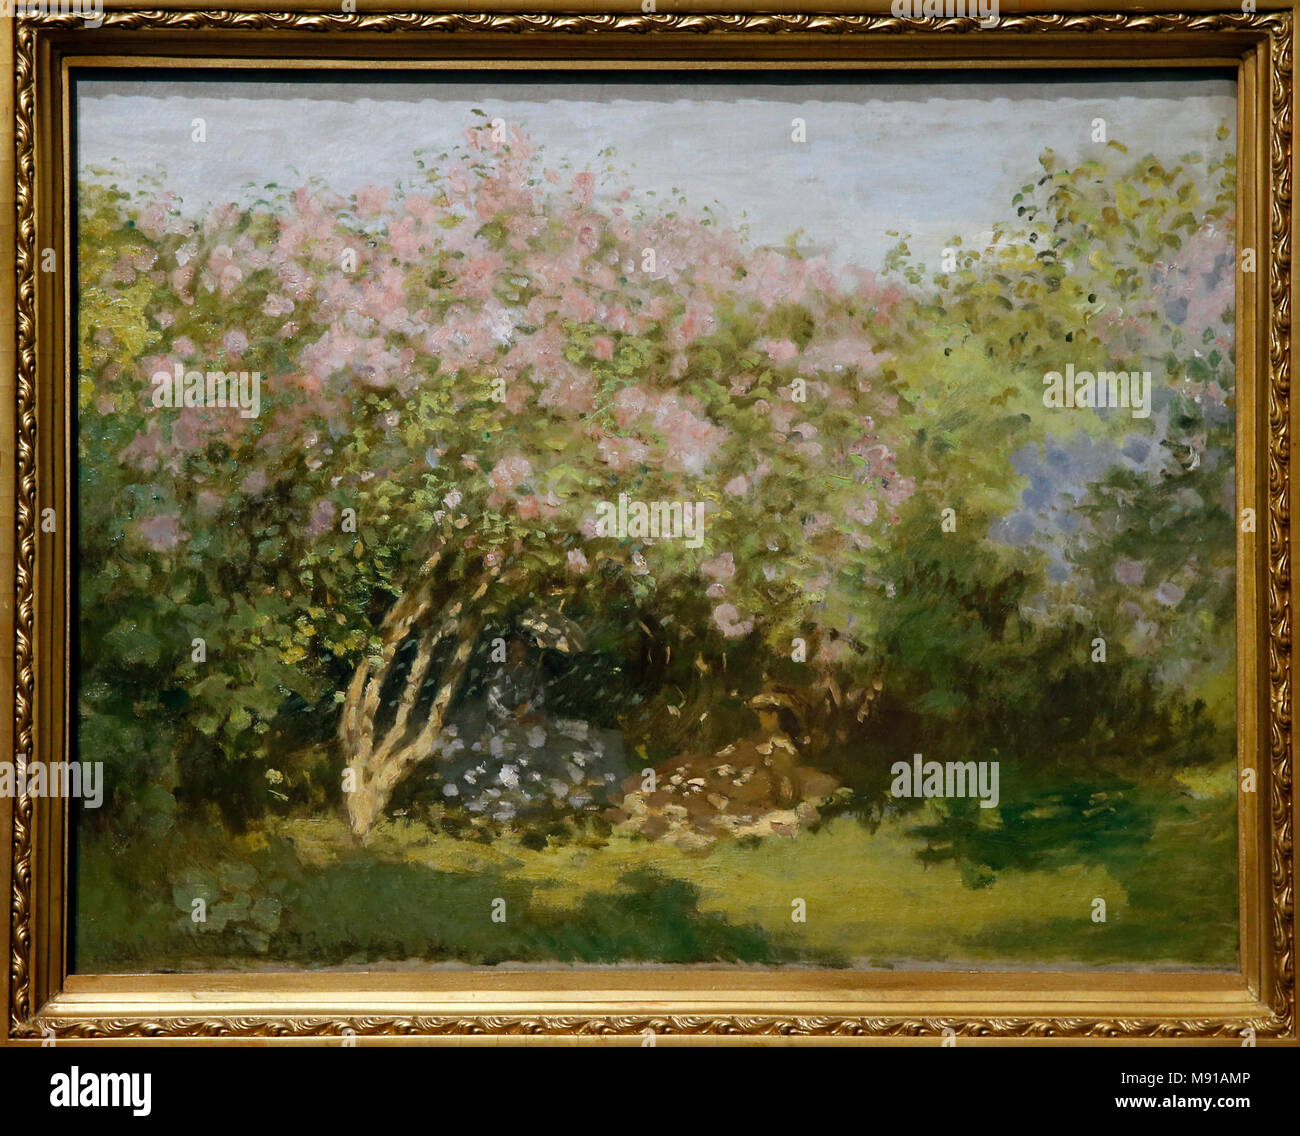 Claude Monet, lilas au soleil, (Argenteuil), 1872-1873, huile sur toile. Collection Chtchoukine, Musée des Beaux-Arts Pouchkine, Moscou. Une balle pendant qu'exposées dans Banque D'Images